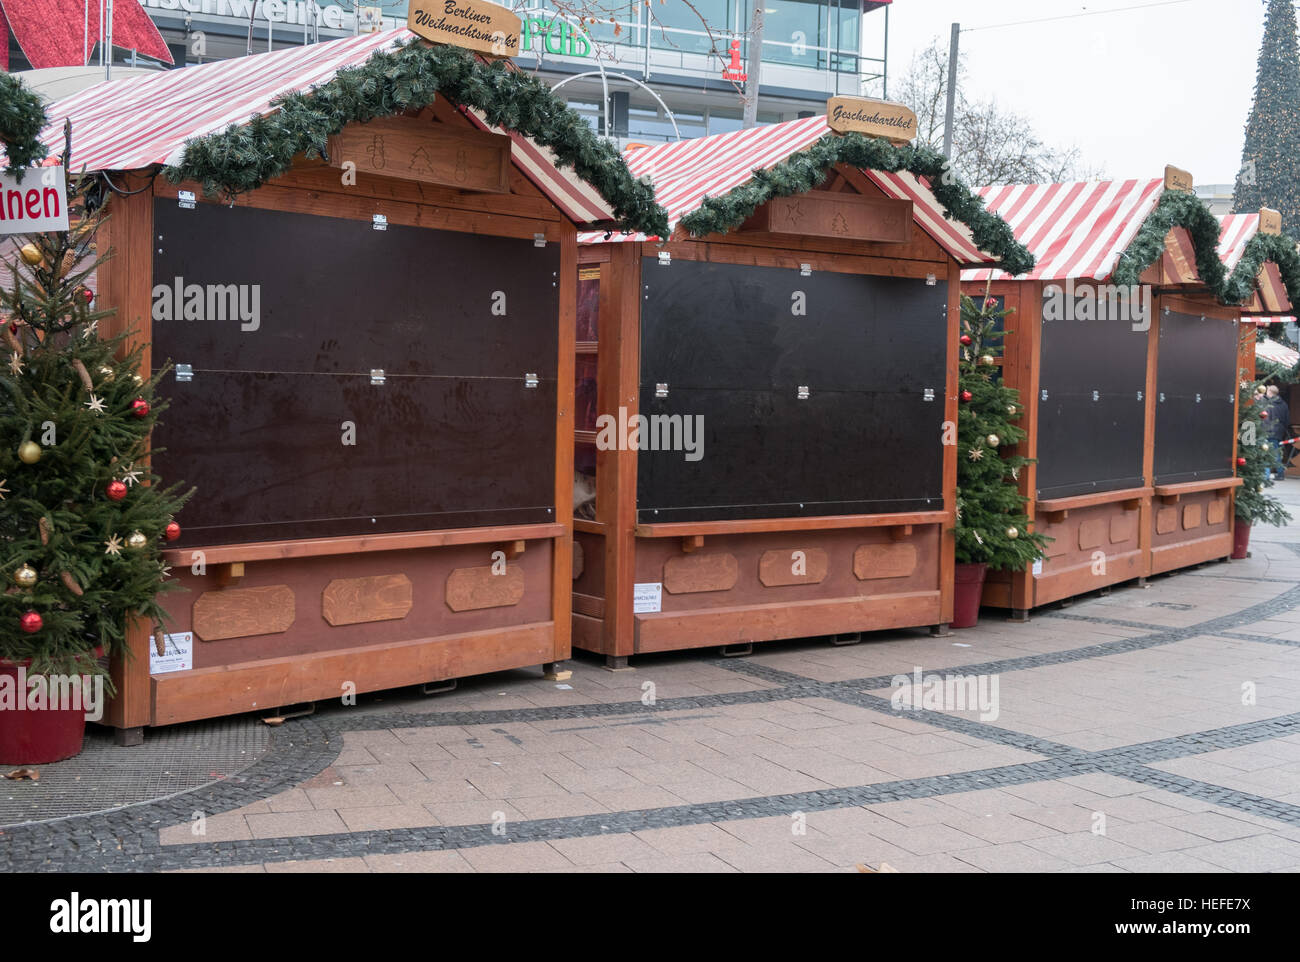 Marché fermé cale au Marché de Noël à Berlin, le jour après l'attaque terroriste. Banque D'Images